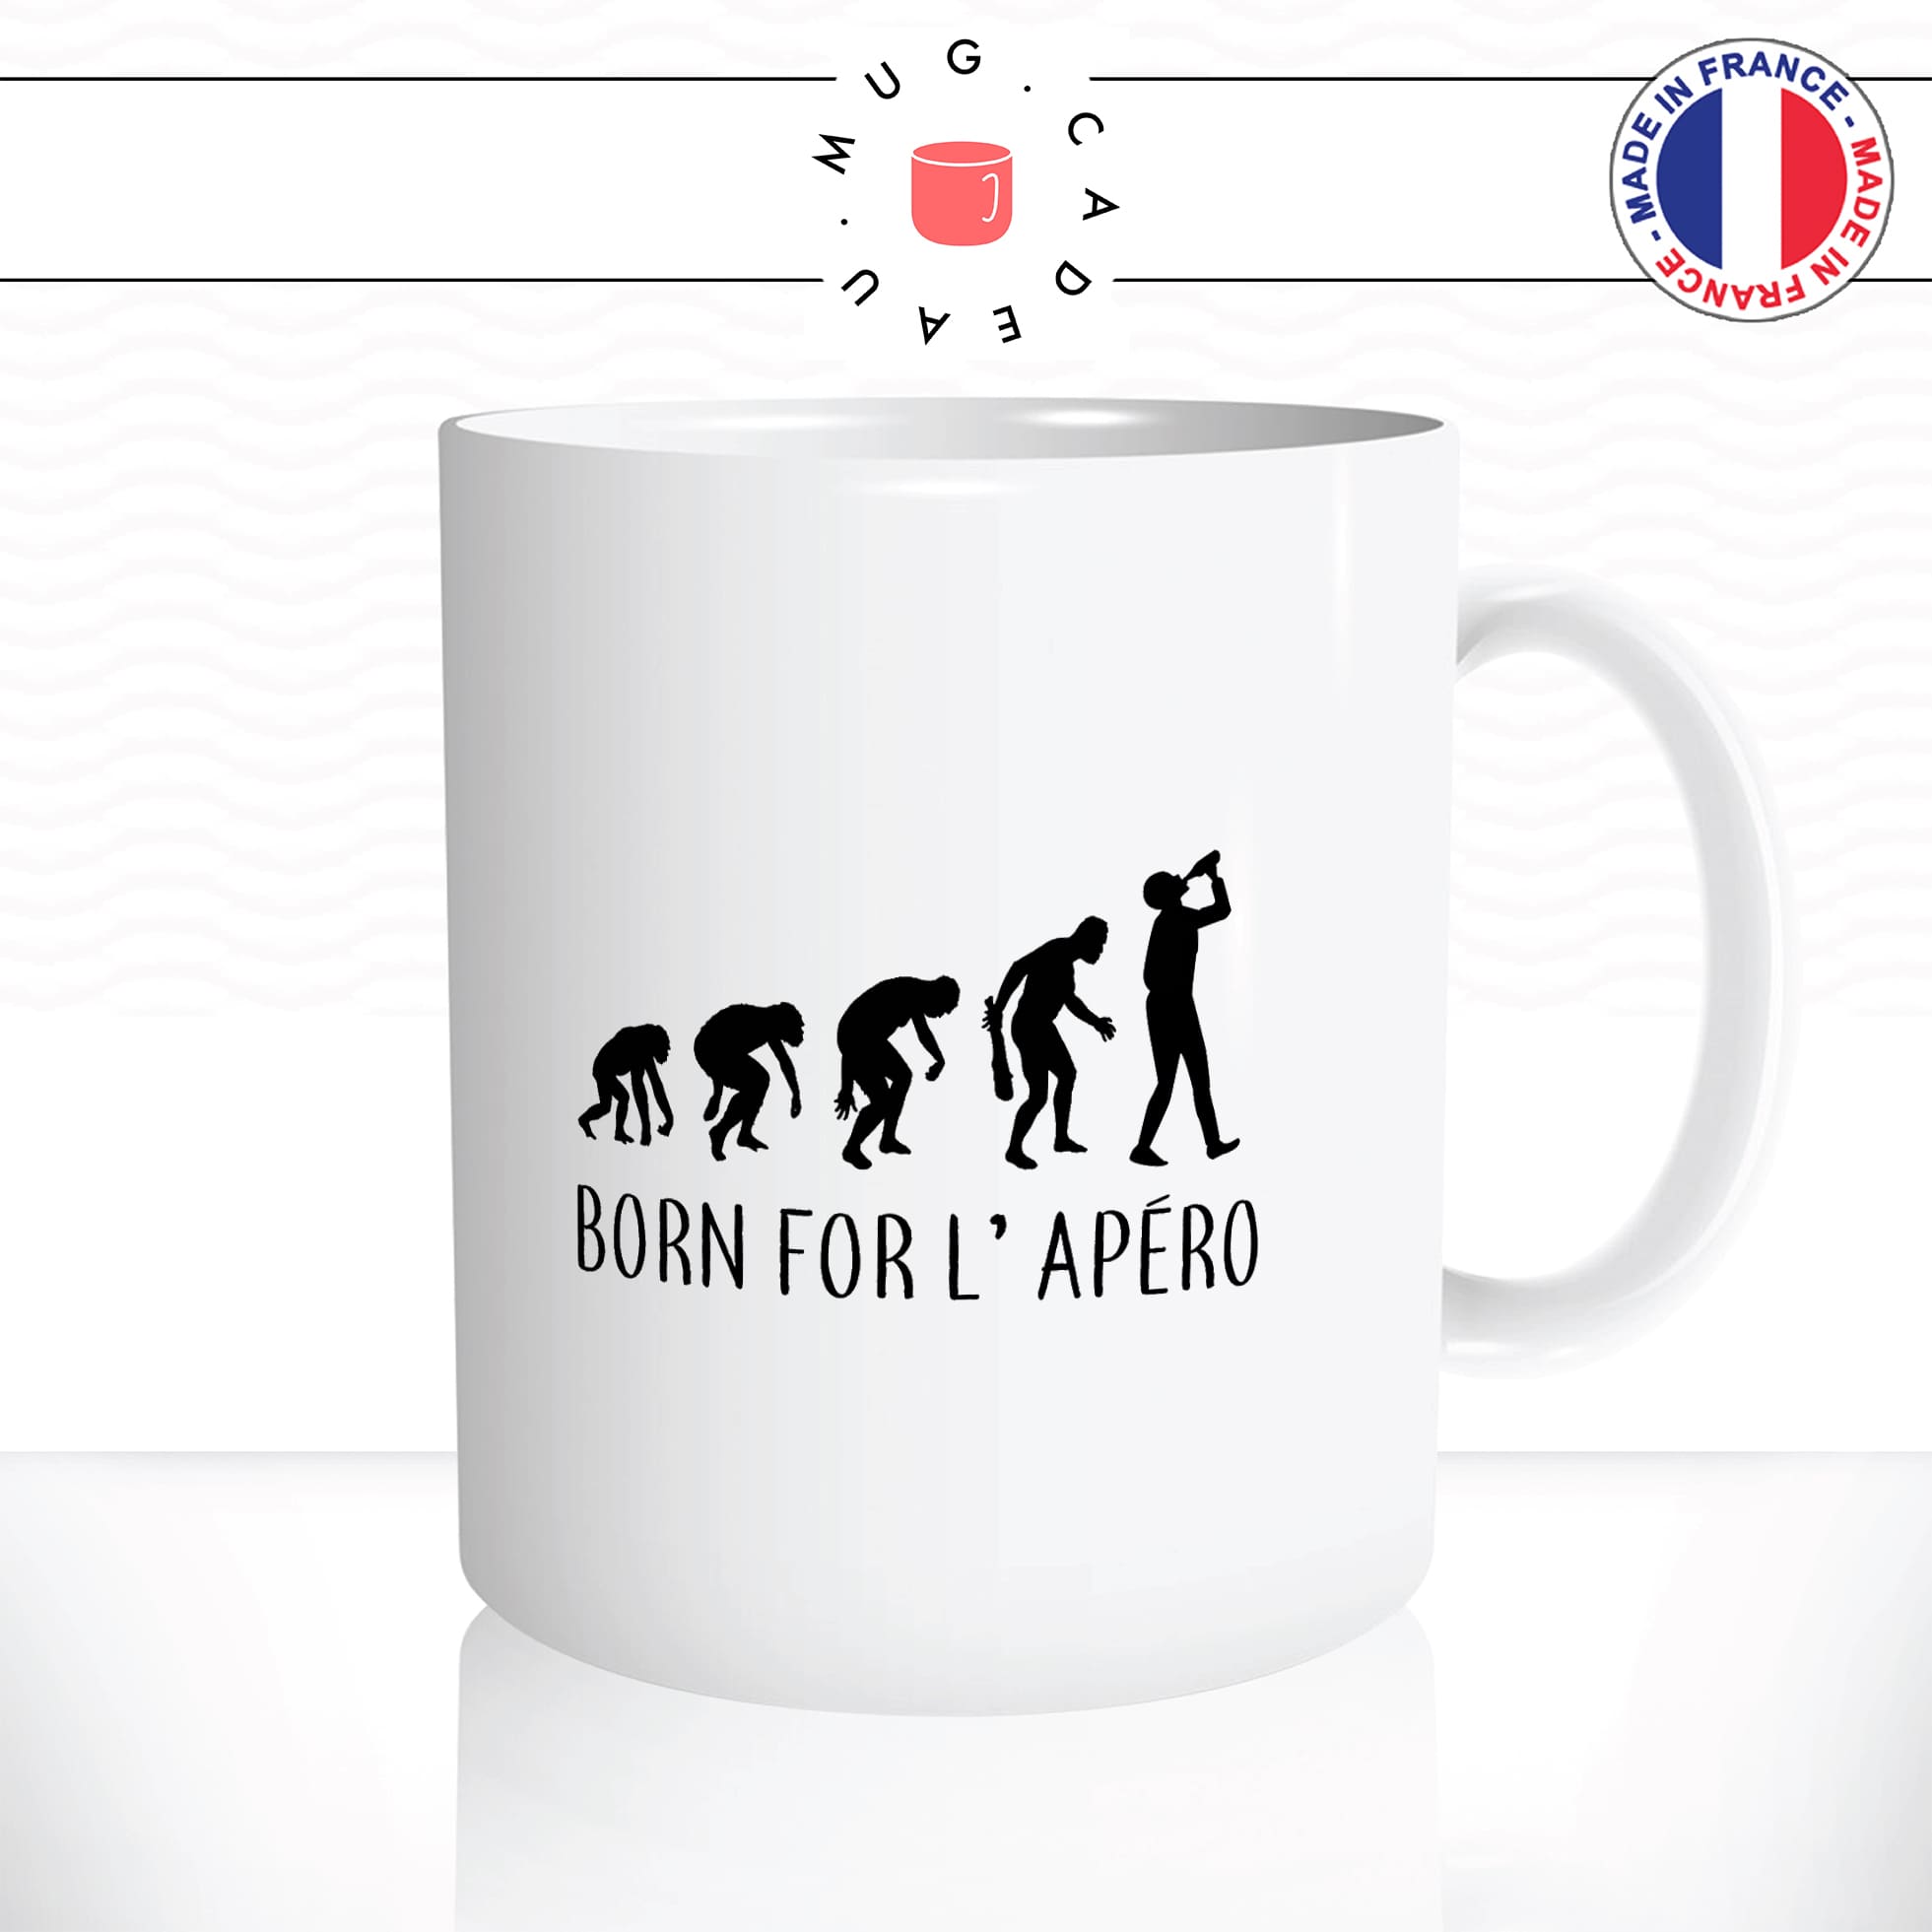 mug-tasse-blanc-unique-born-for-lapéro-evolution-humaine-homme-femme-parodie-humour-fun-cool-idée-cadeau-original-personnalisé2